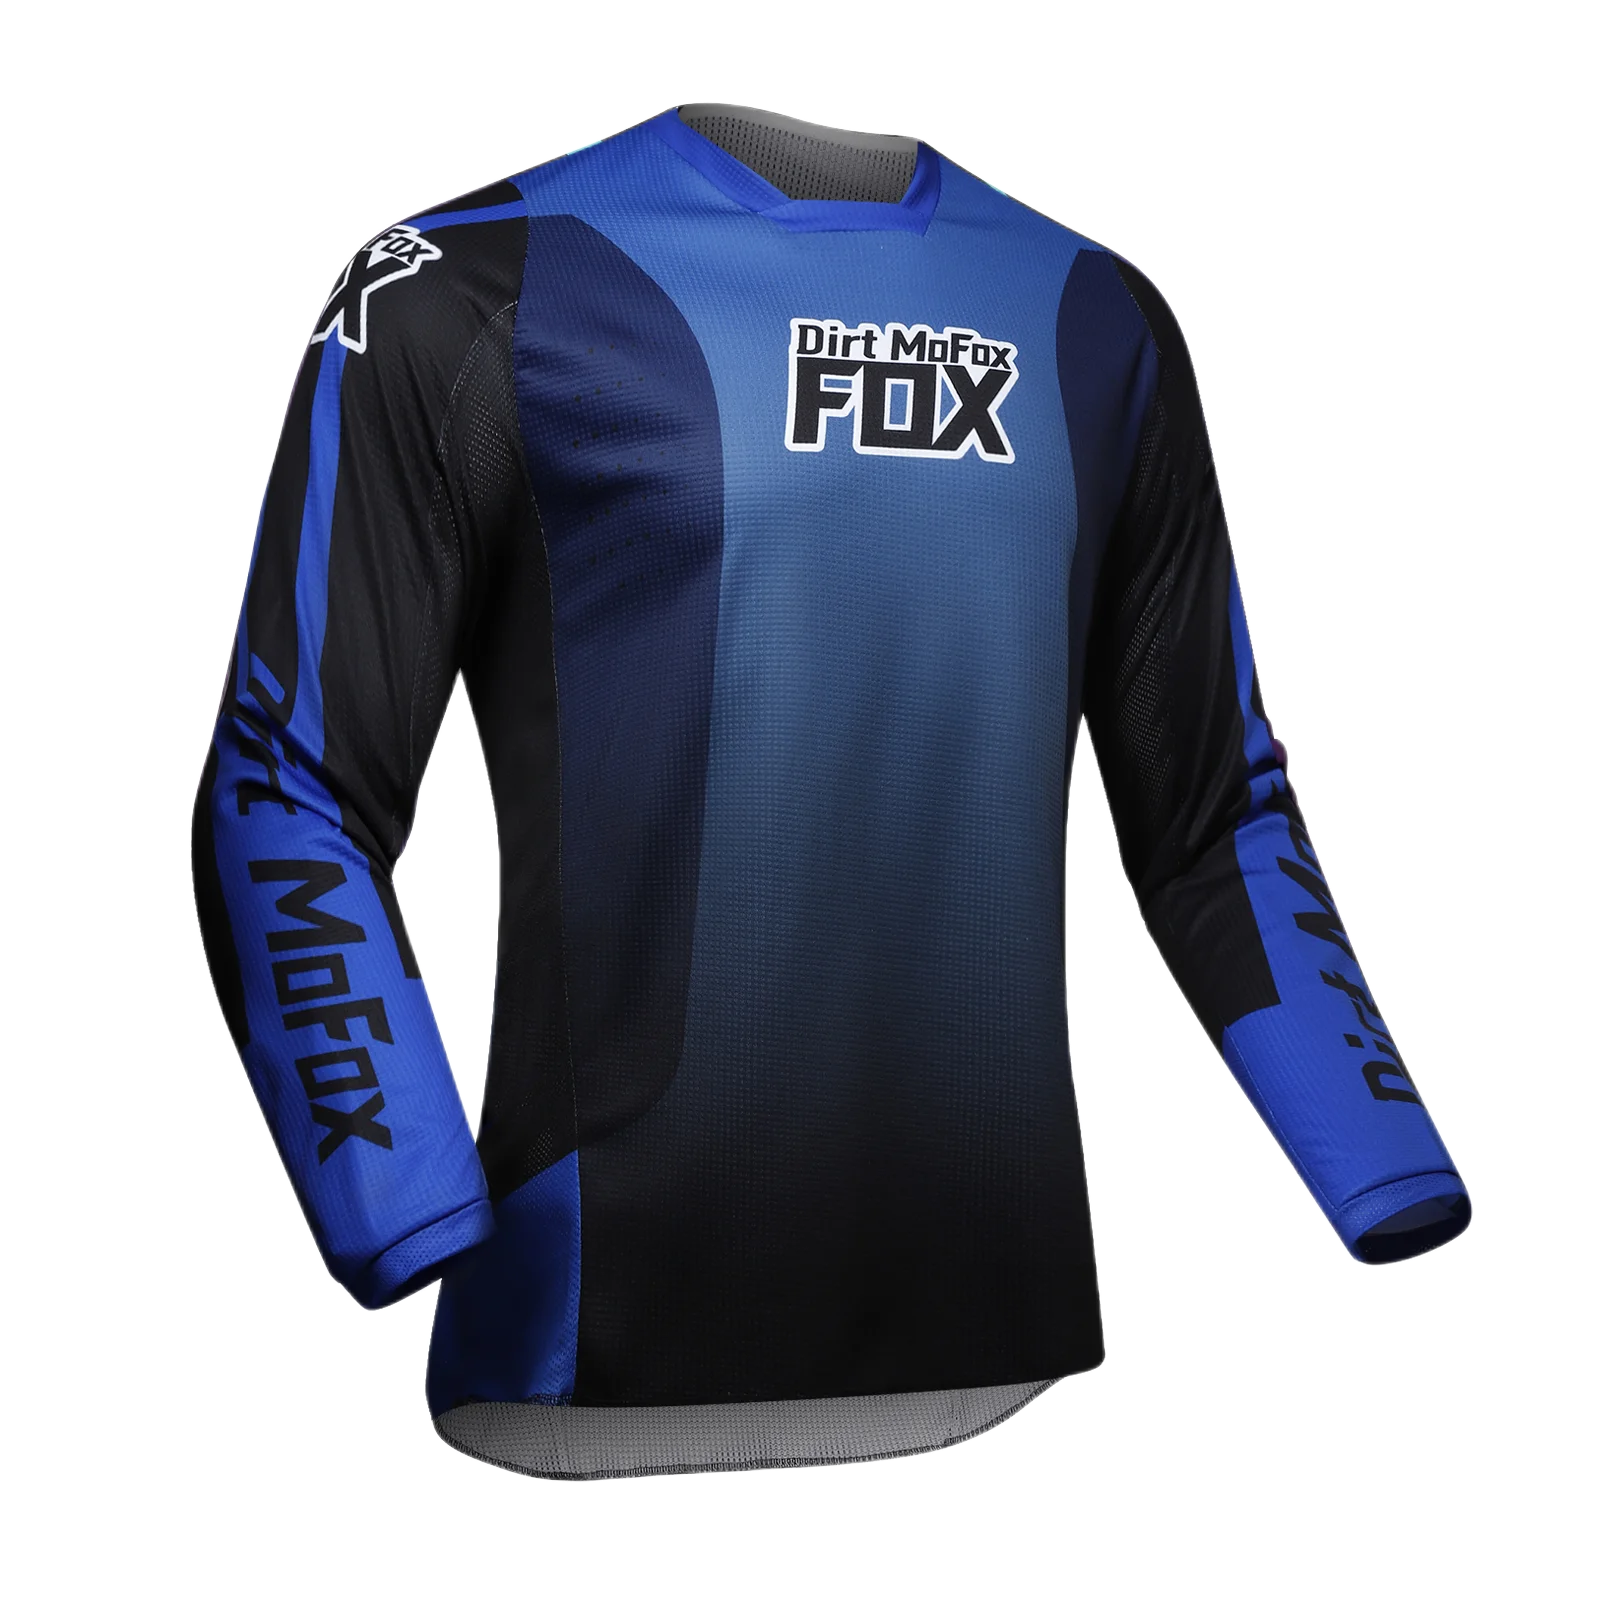 Dirt Mofox MX Jersey Hose blau Combo Motocross Ausrüstung Set Downhill Dirt Bike Anzug Offroad MTB Utv Dh Race Erwachsenen Outfit